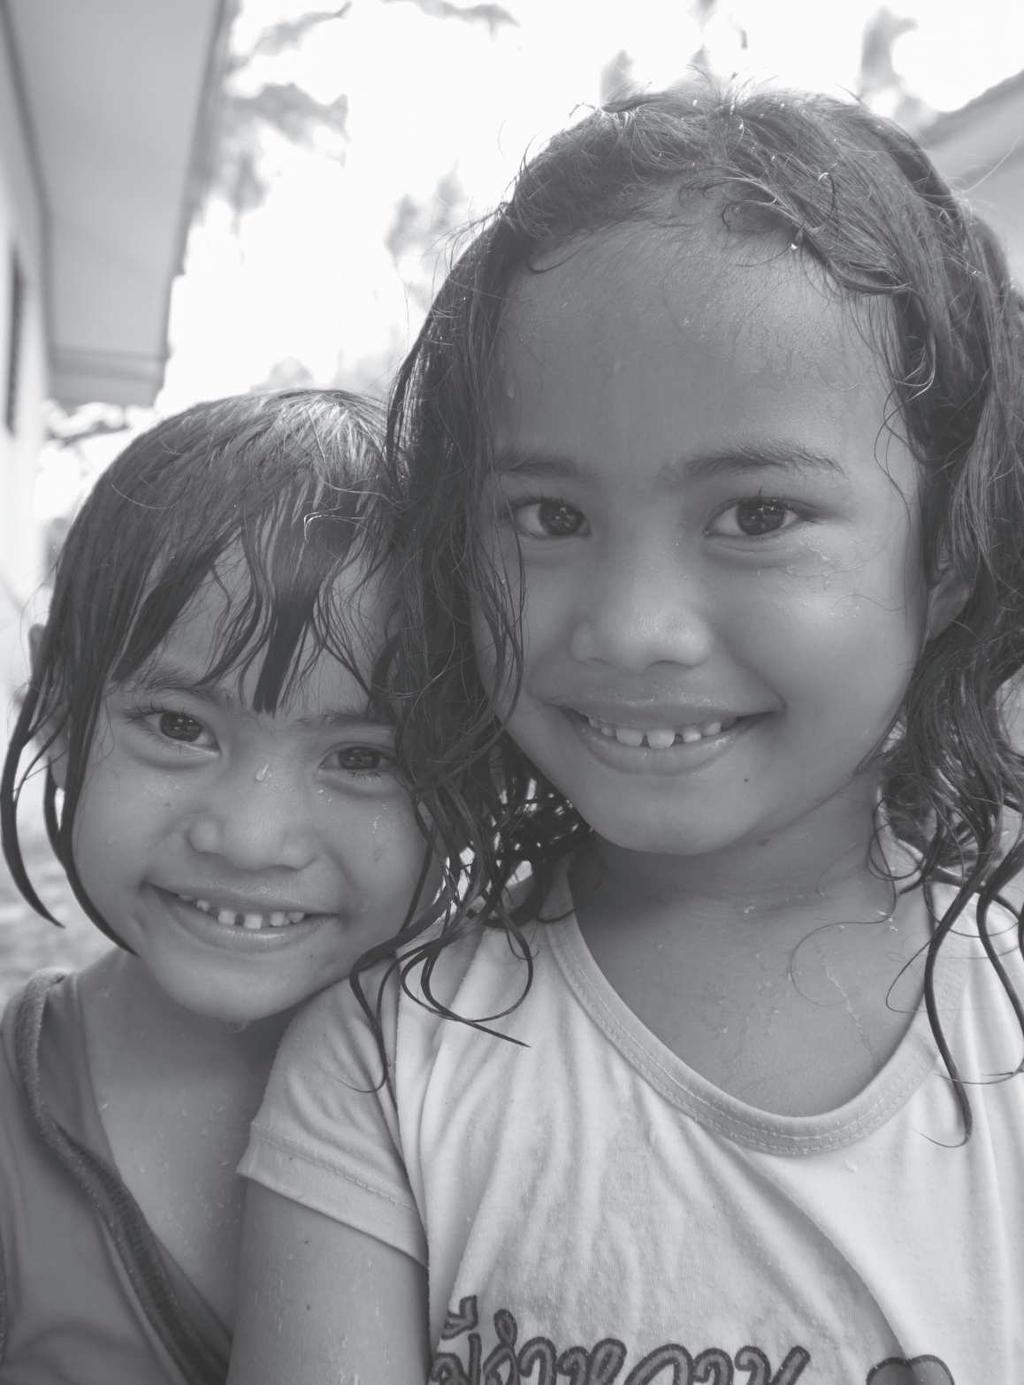 가난을넘어꿈을향해 희망의작은섬동티모르 가정복지회는동티모르의민간 NGO기관인 Alolla